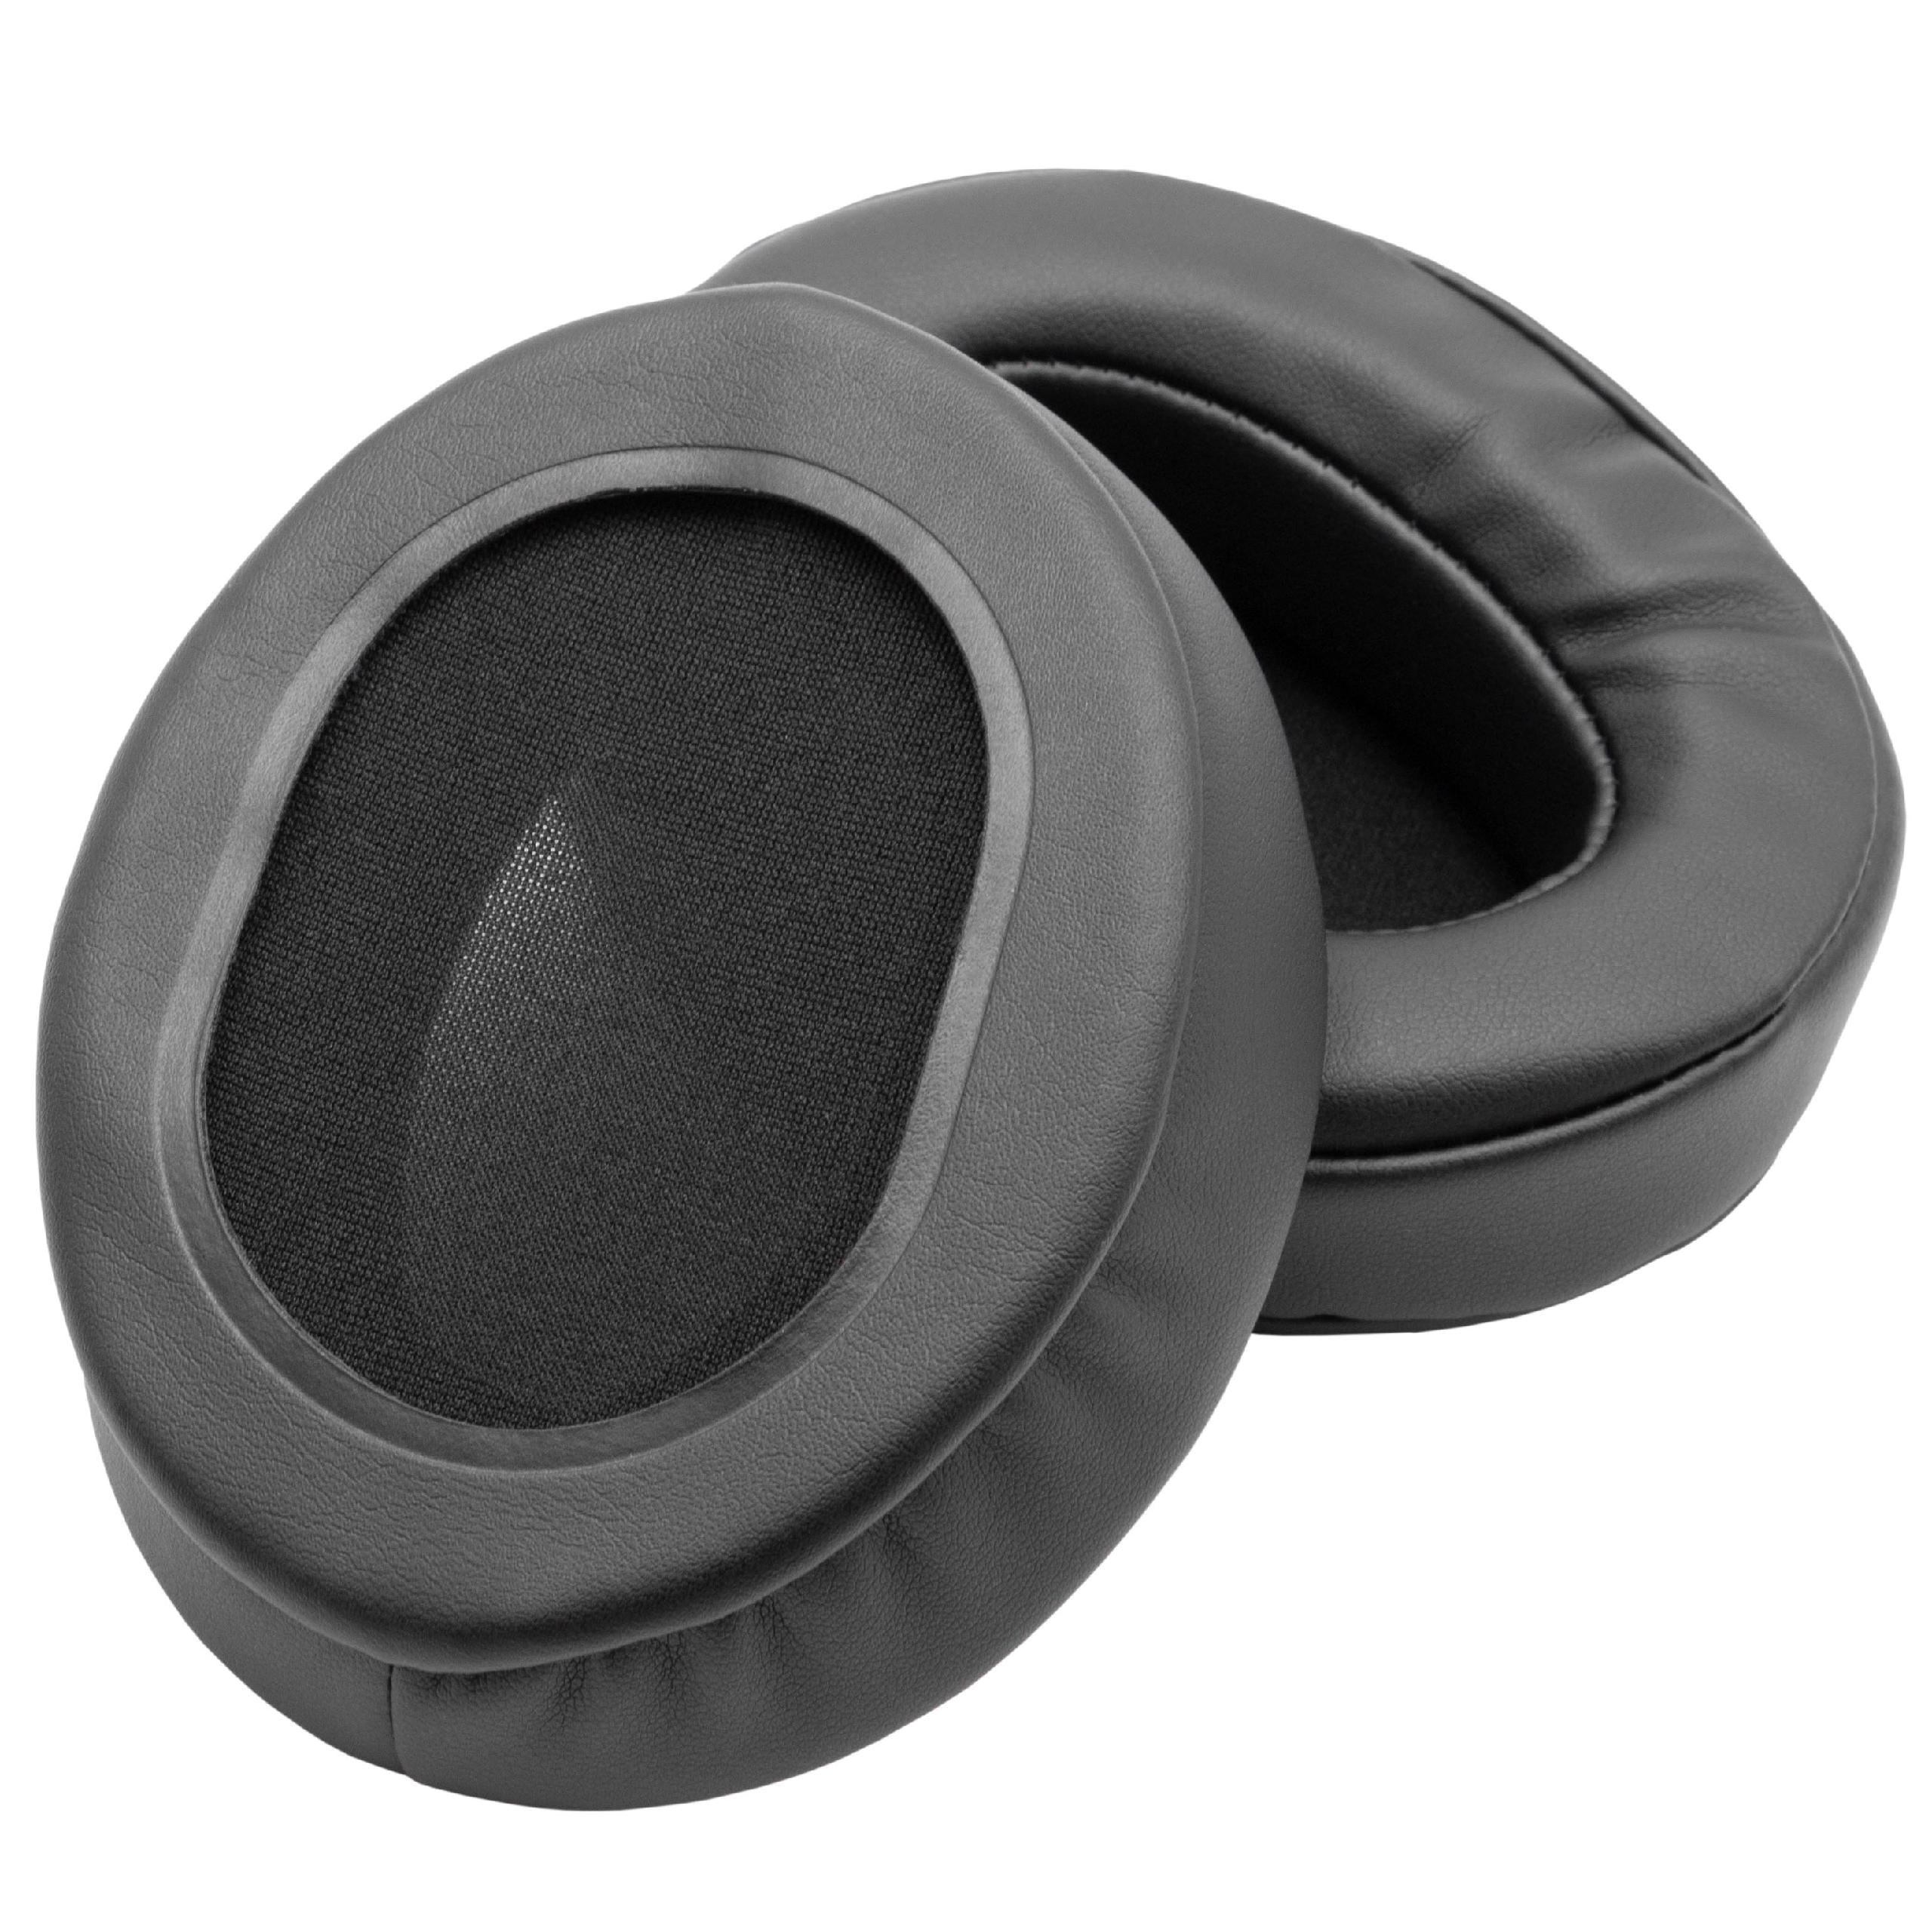 Almohadilla para auriculares Roland, Brainwavz RH-300 - poliuretano / espuma negro